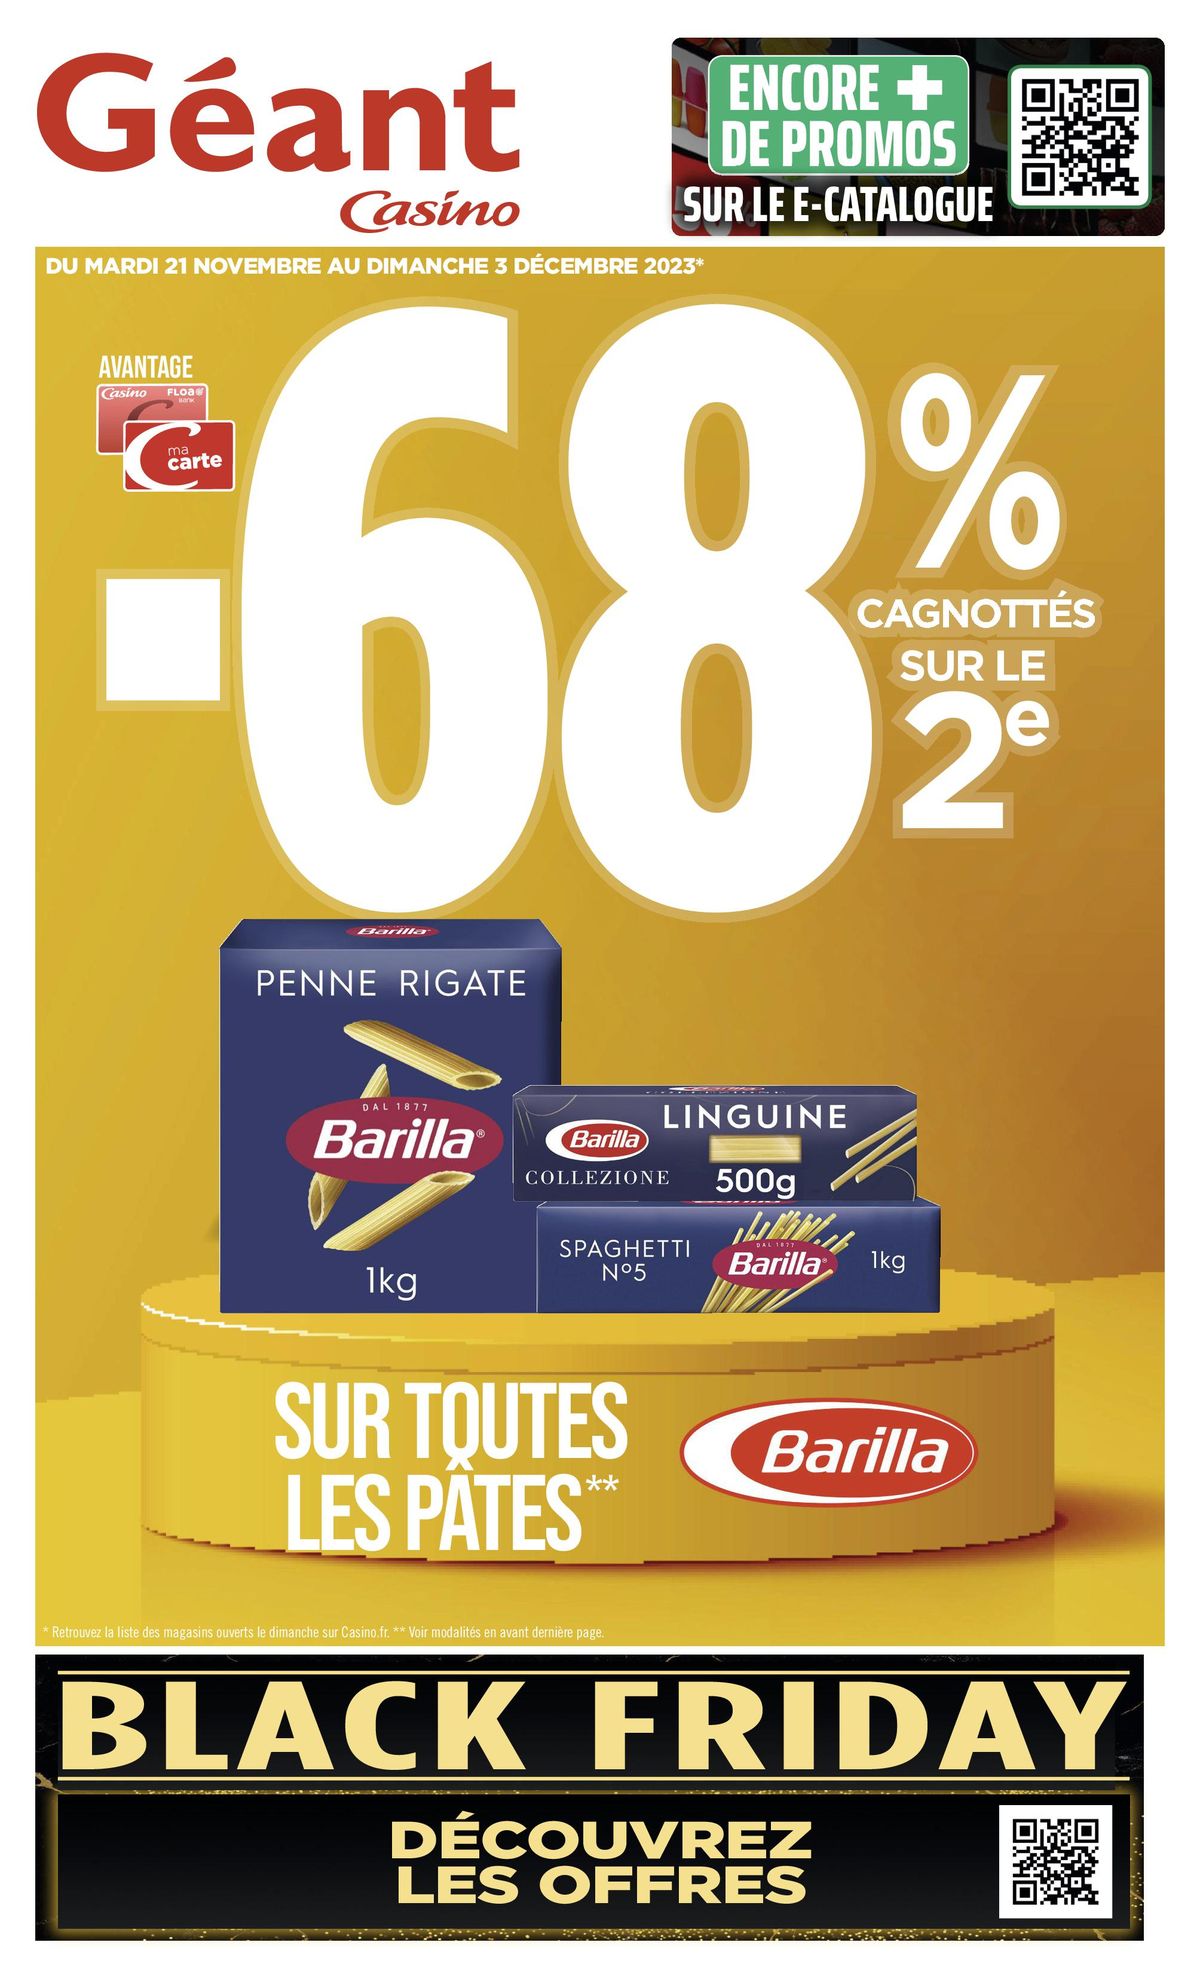 Catalogue -68 % CAGNOTTÉS SUR LE 2€, page 00001